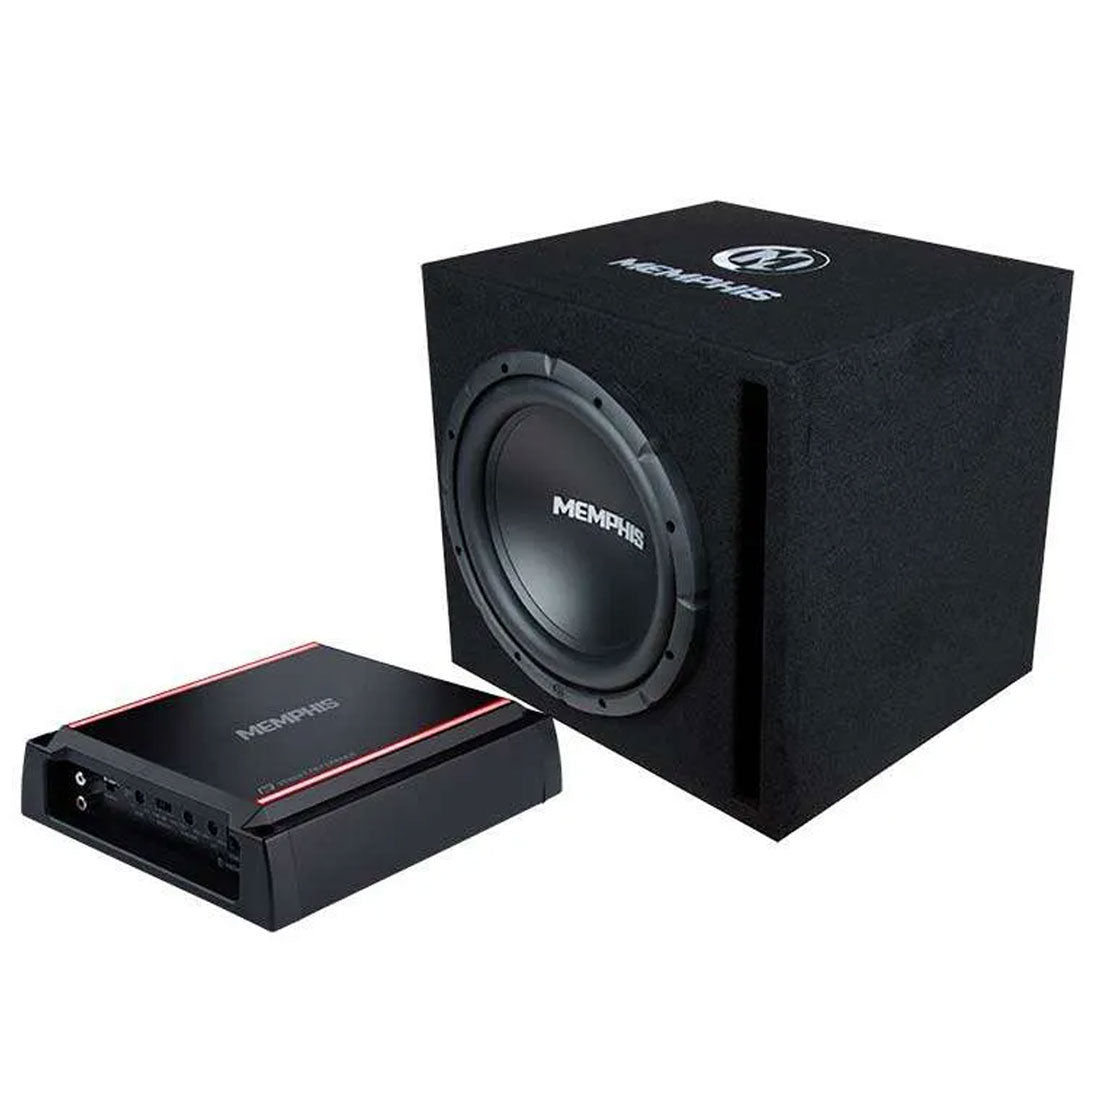 Memphis Audio SRXE112VP Single 12" Bass System with 500 Watt Amplifier